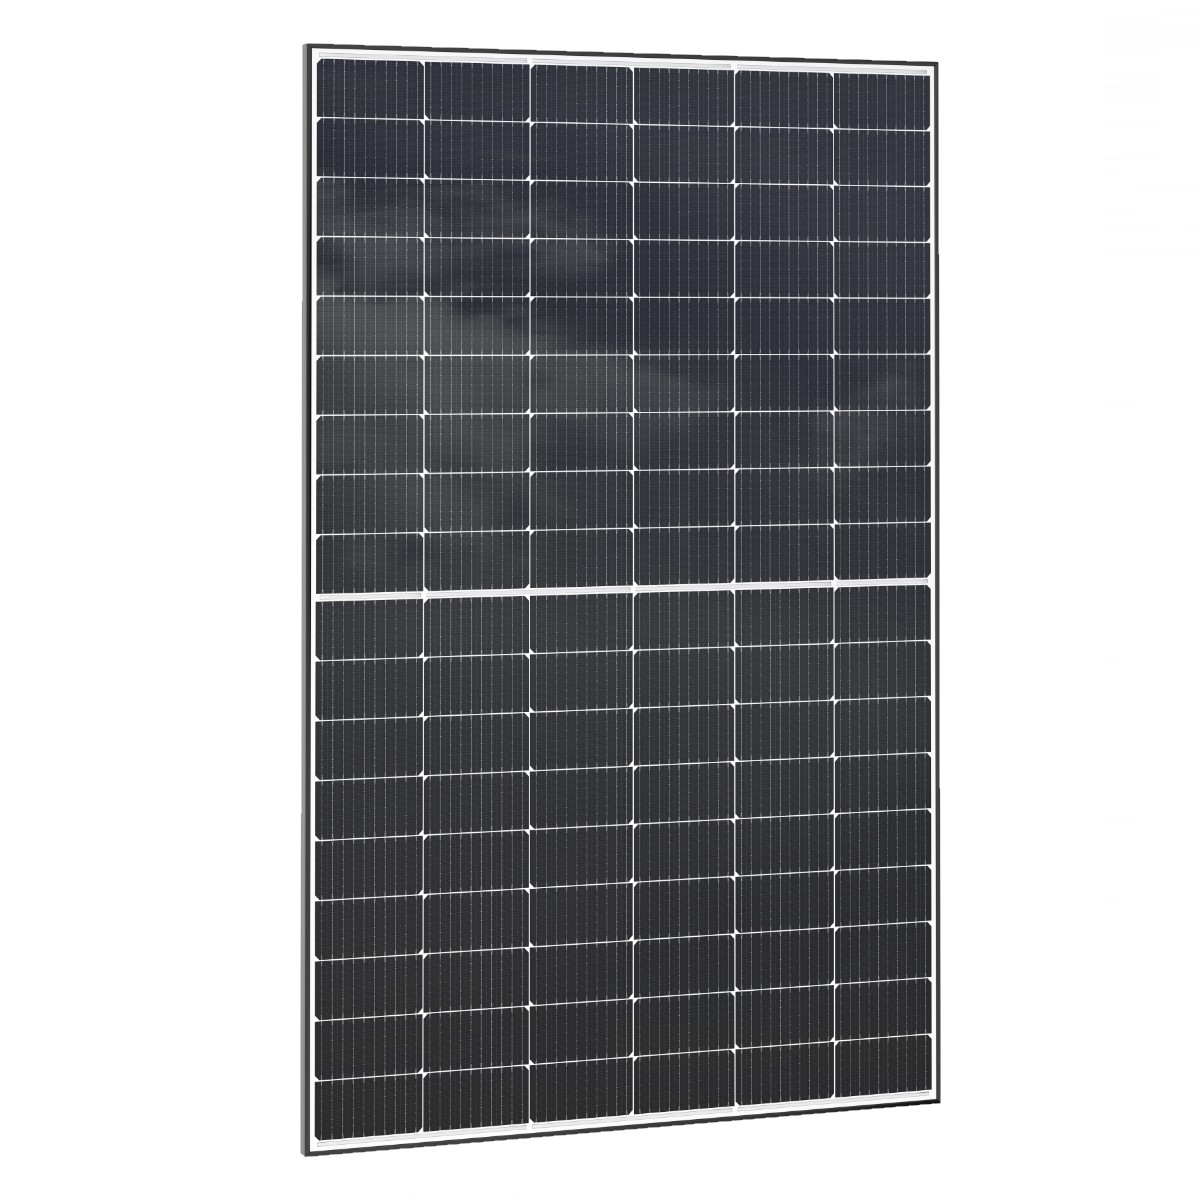 PREMIUM 410W photovoltaic module